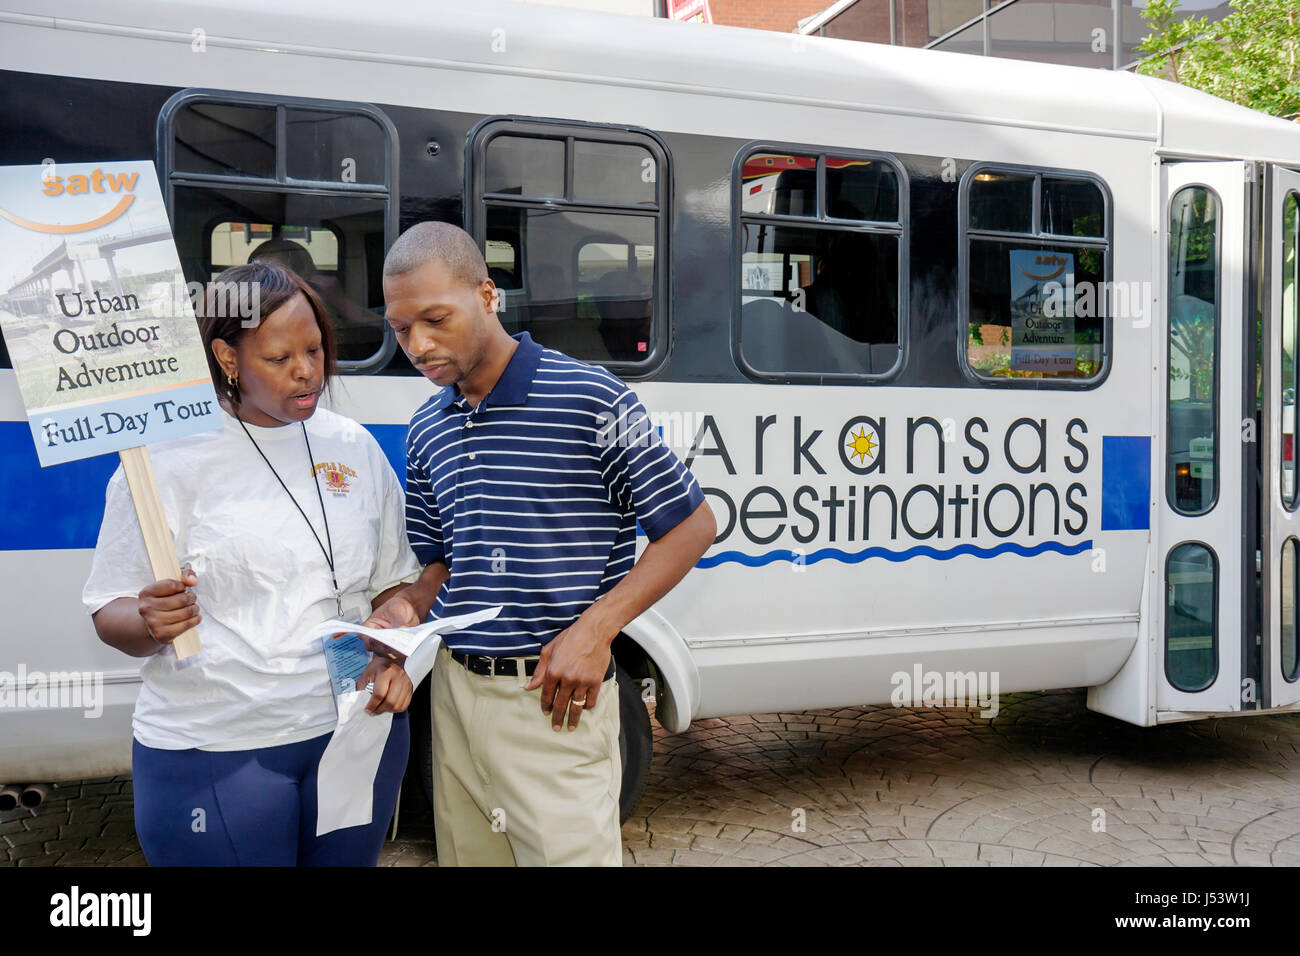 Little Rock Arkansas,The Peabody Little Rock,hôtel,Black Woman femmes,man men male,driver,guide,bus,autocar,charter,transport de groupe,sche Banque D'Images